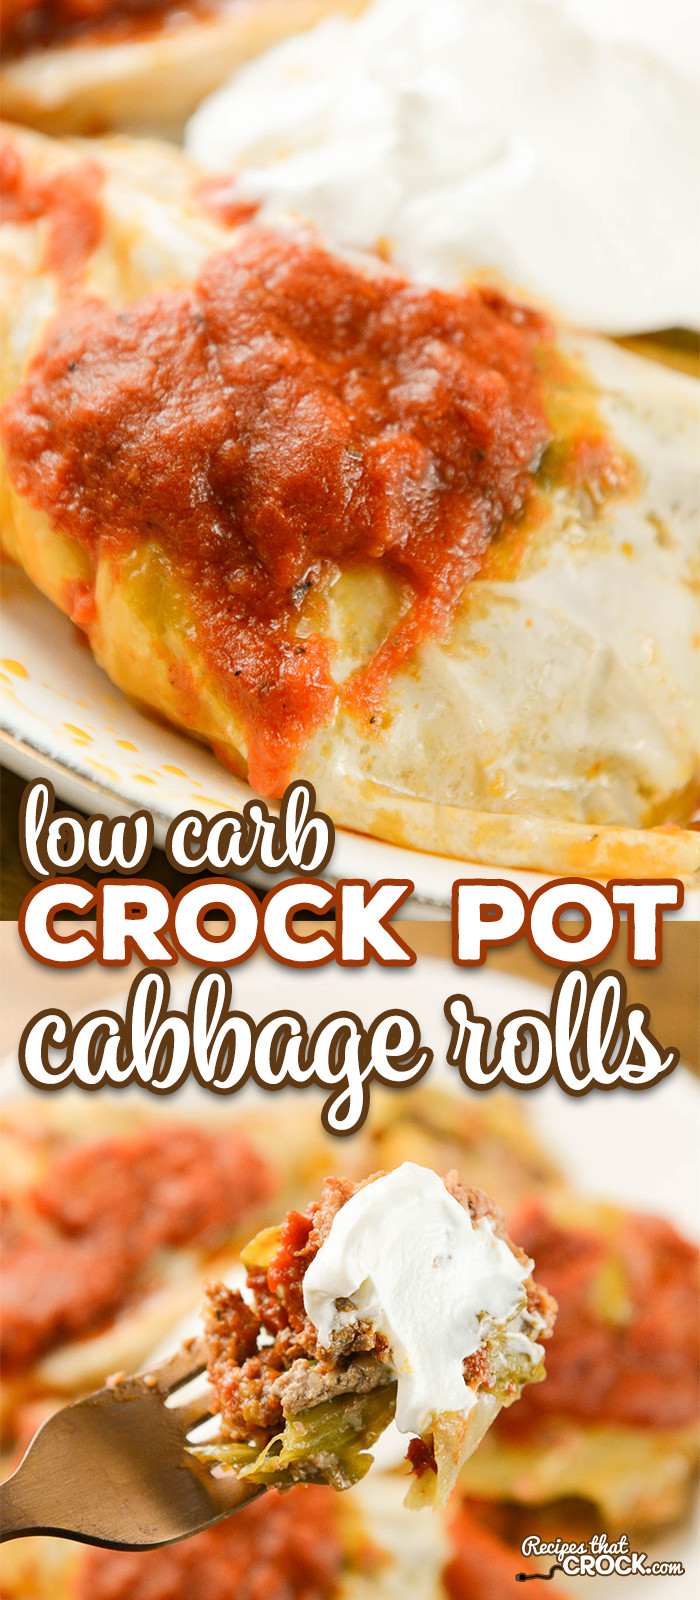 Low Carb Cabbage Recipes
 Crock Pot Cabbage Rolls Recipes That Crock